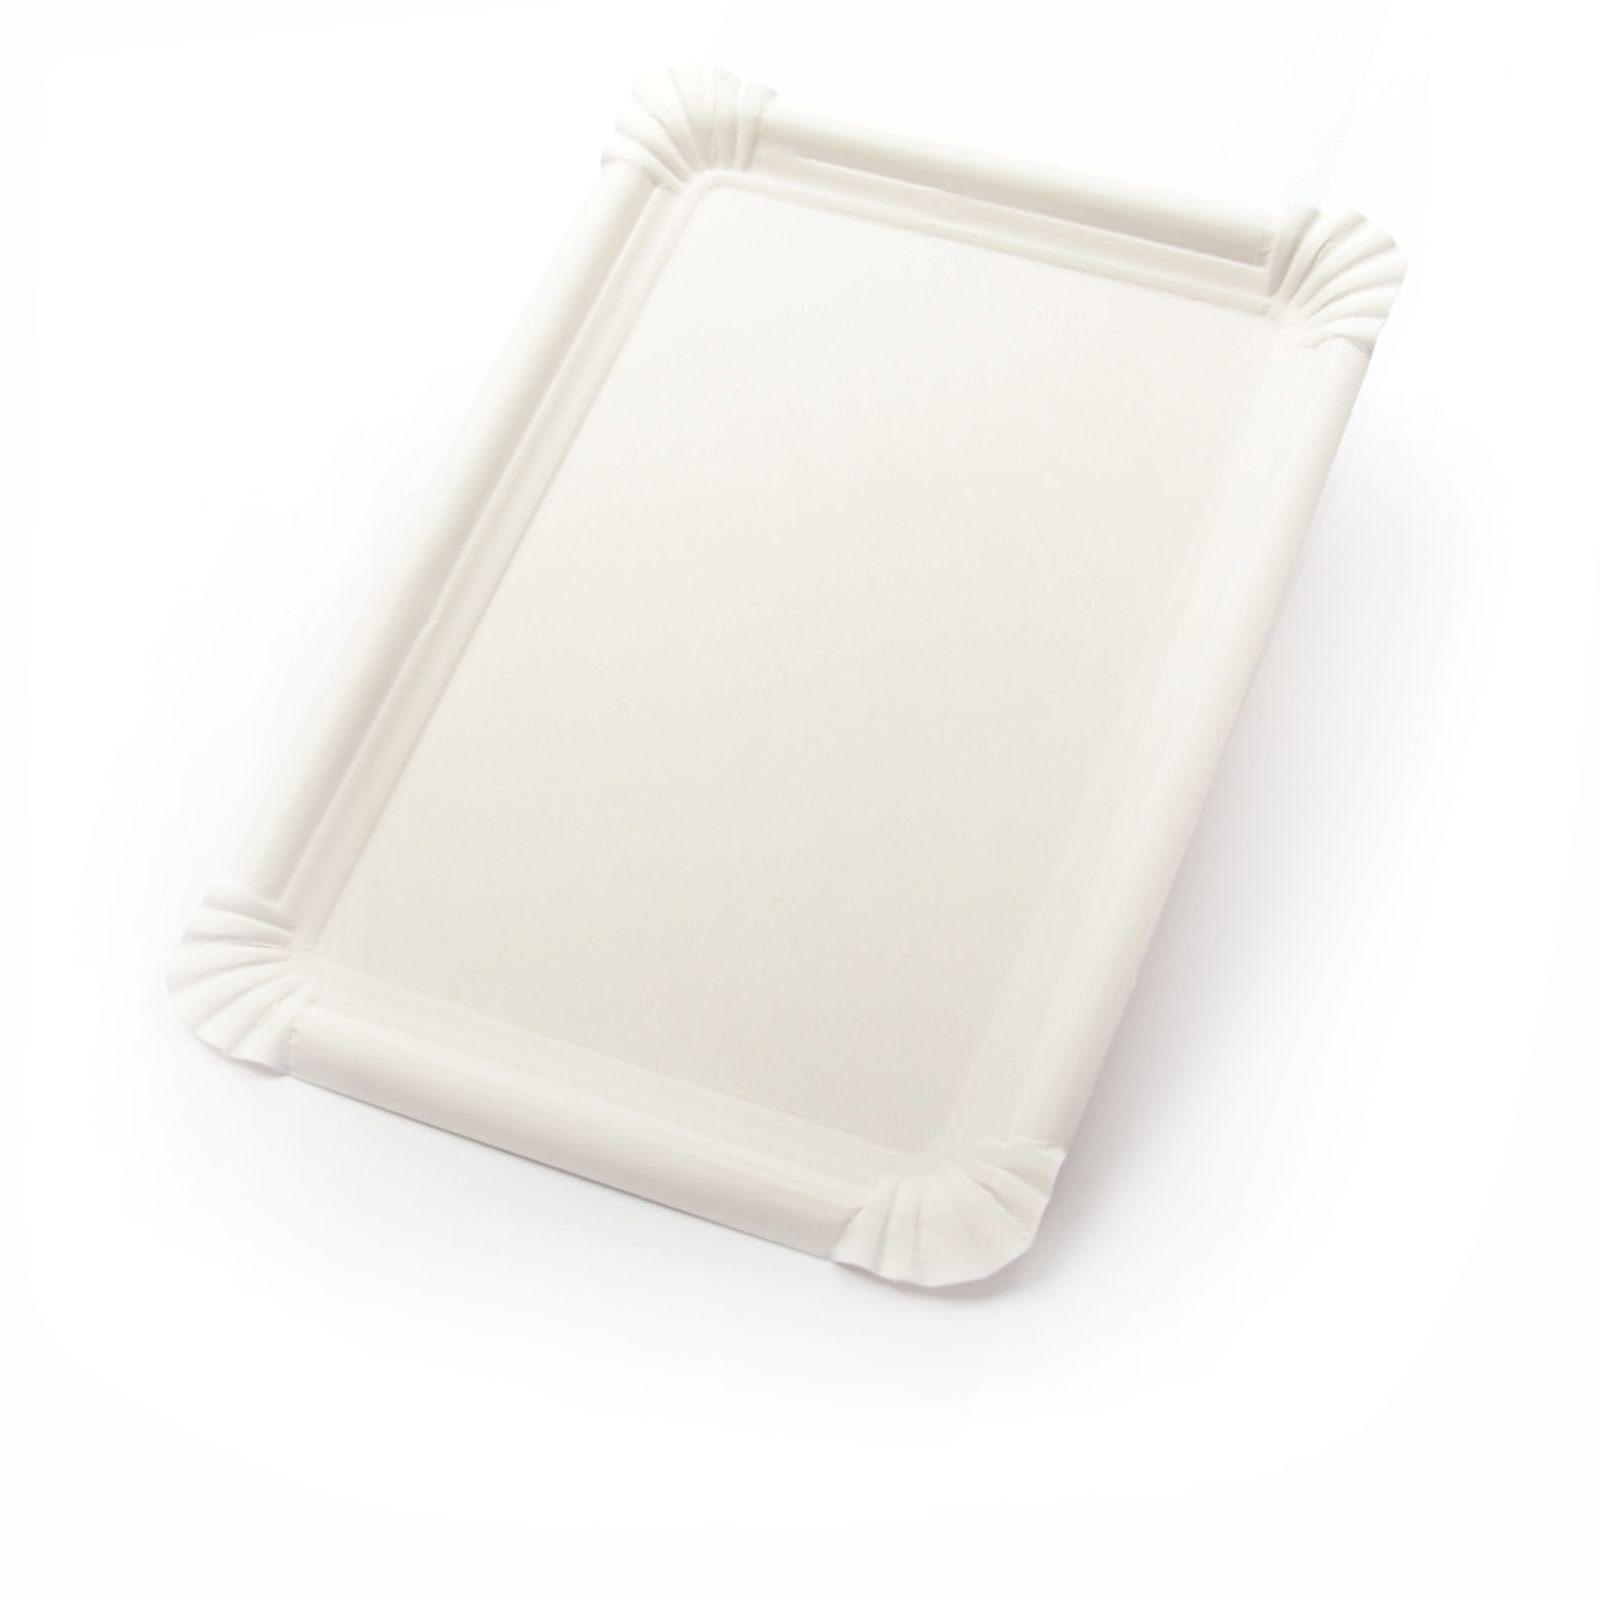 Imbissteller Tortenteller cm), Einwegteller Beschichtung, 250 Stück Frischfaser Pappteller ohne rechteckig weiß, (18×26 Kuchenteller Kuchenunterleger